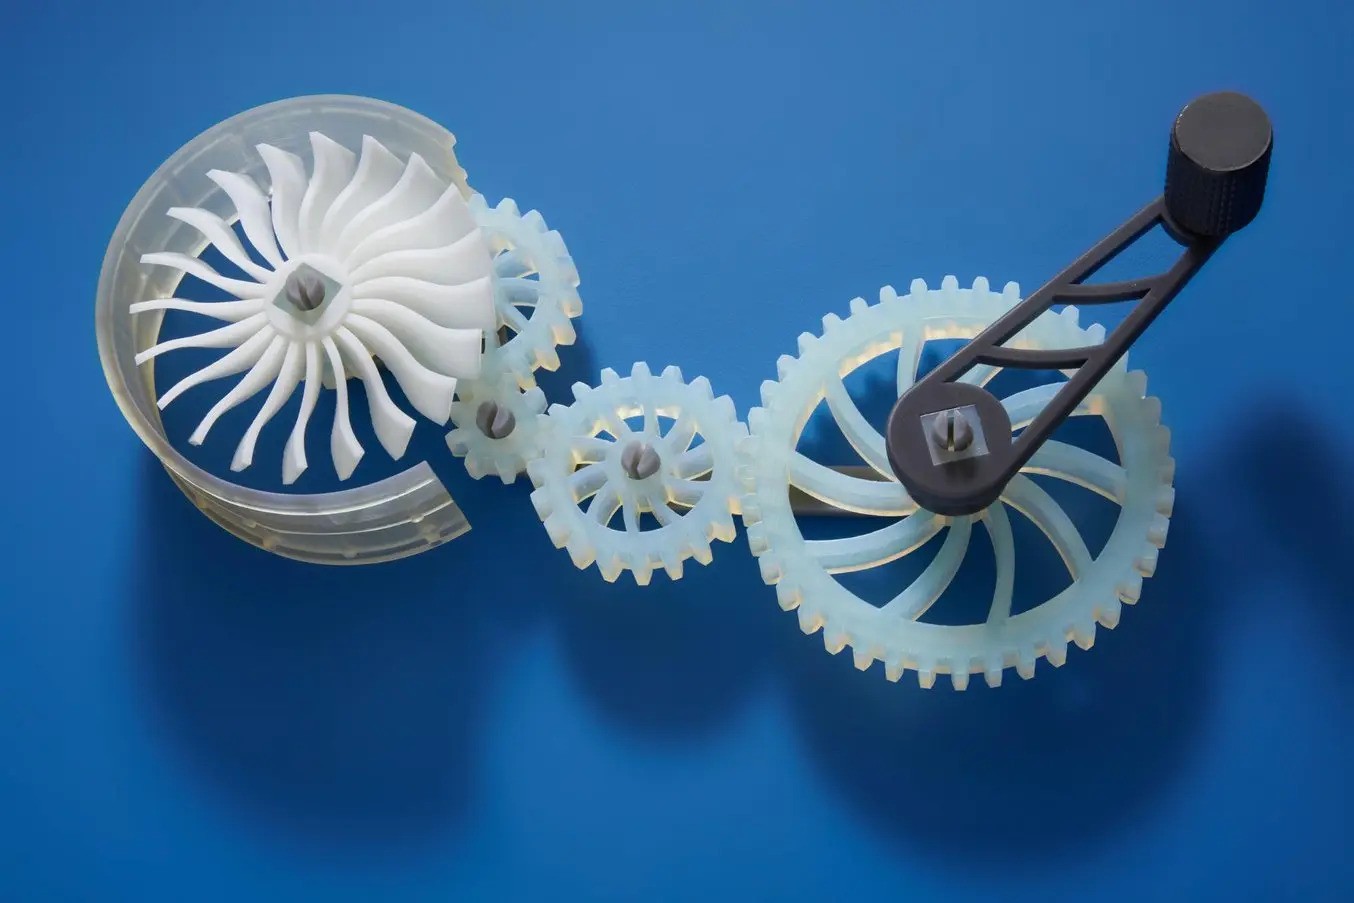 Fabrican tinta capaz de imprimir objetos en 3D más versátiles y sin uniones mecánicas